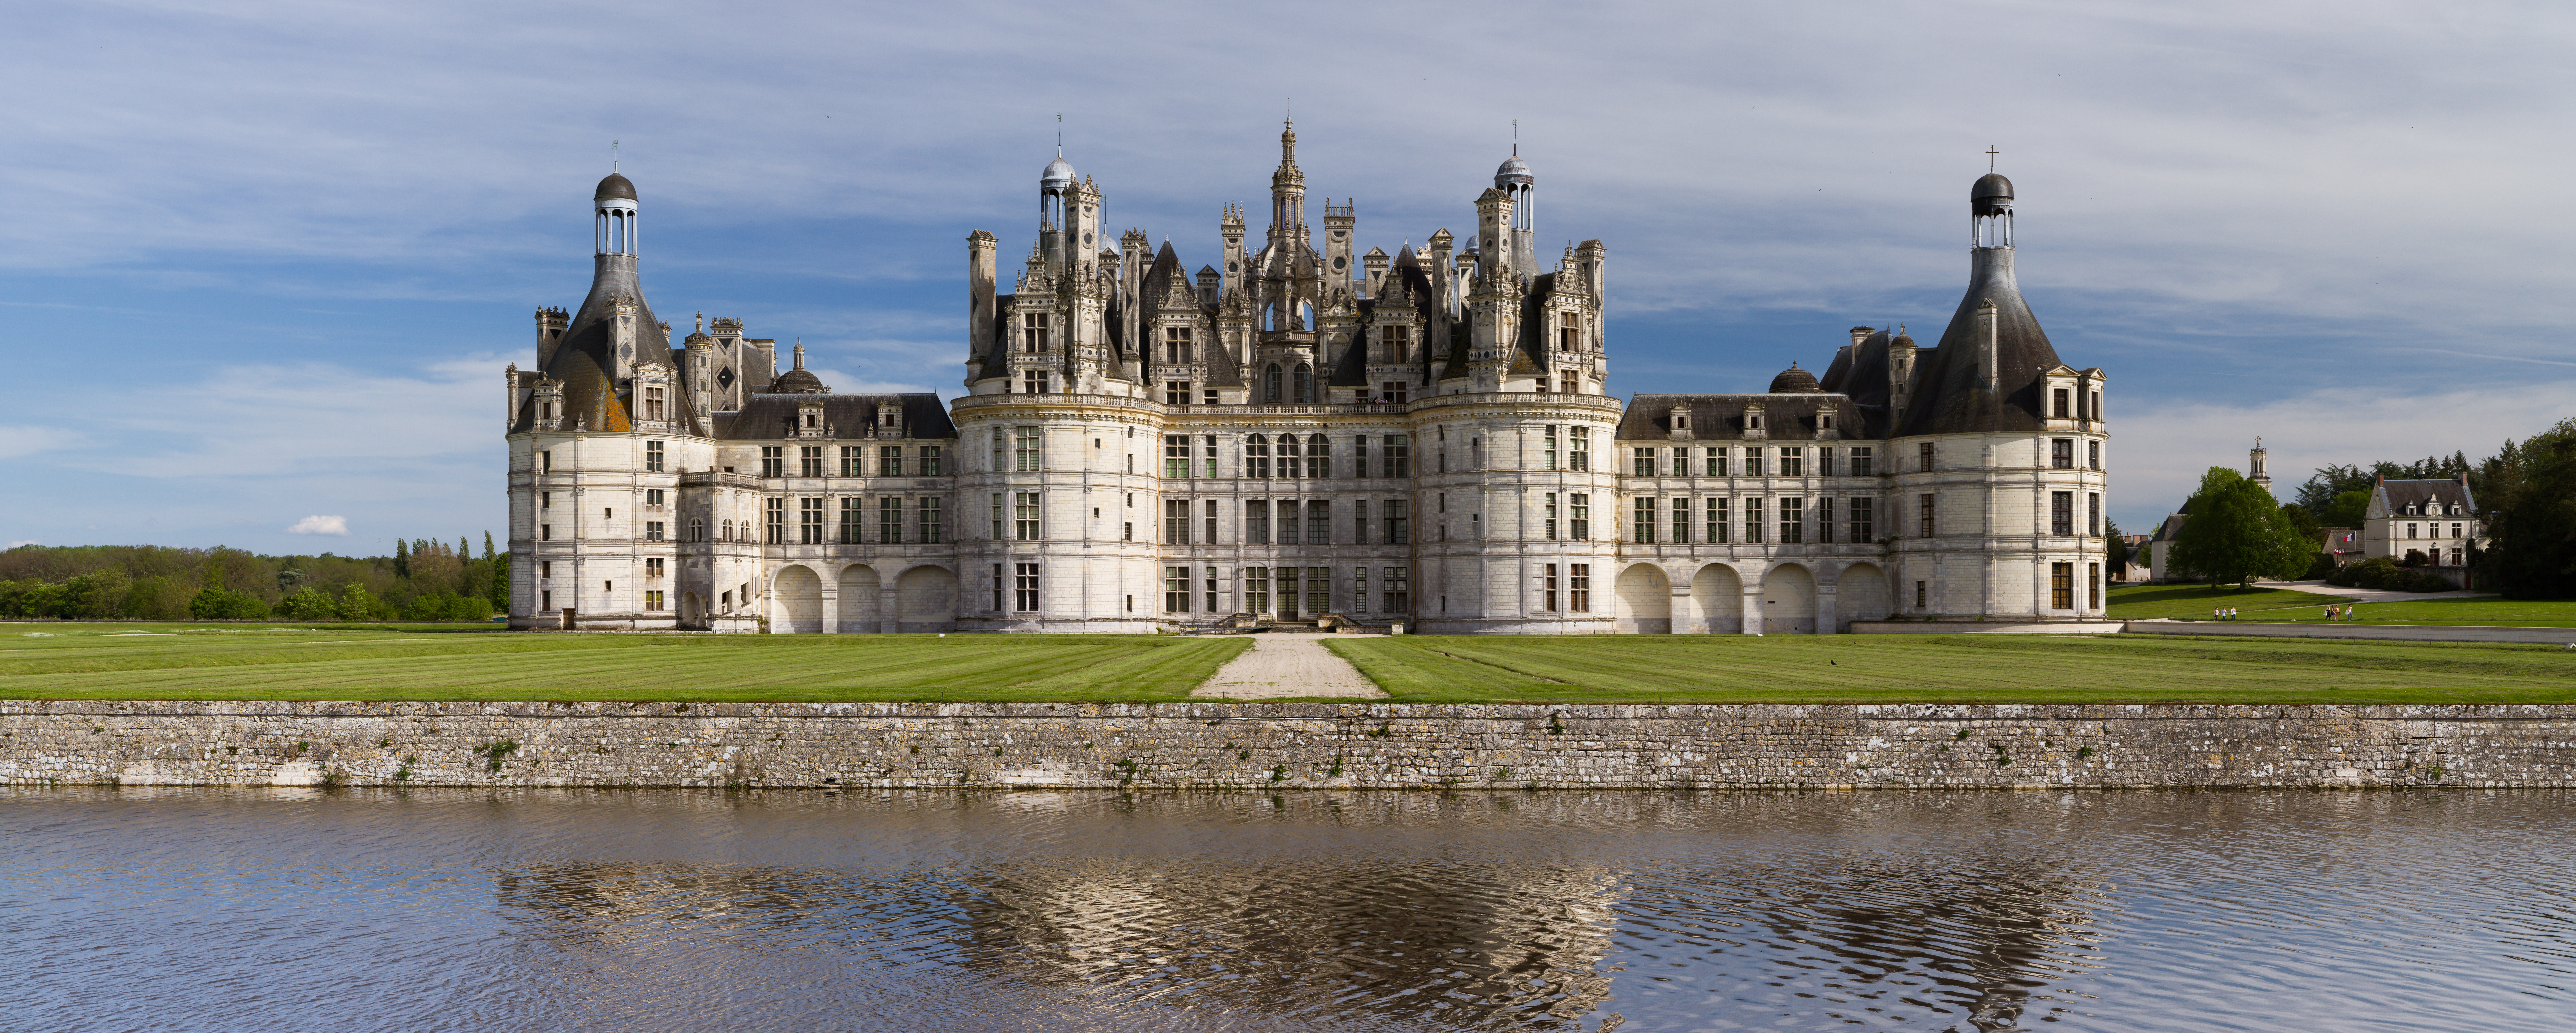 Chateau De Chambord Wikipedia